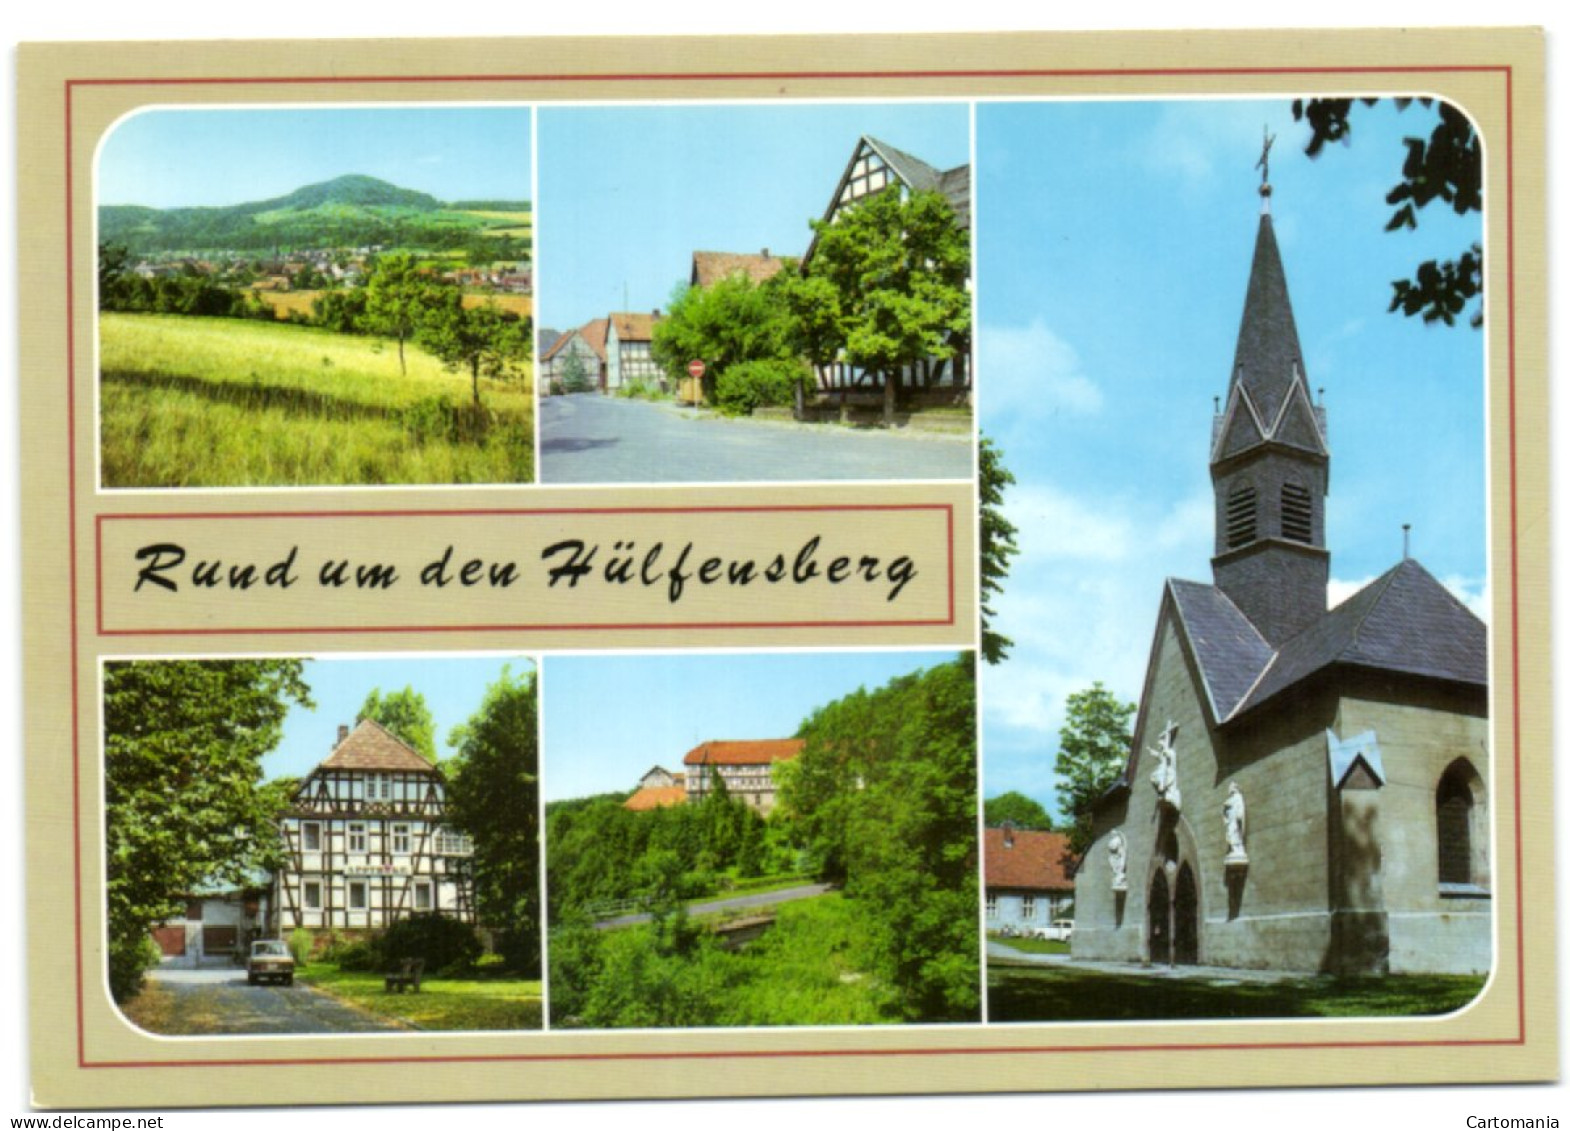 Rund Um Den Hülfensberg - Heiligenstadt